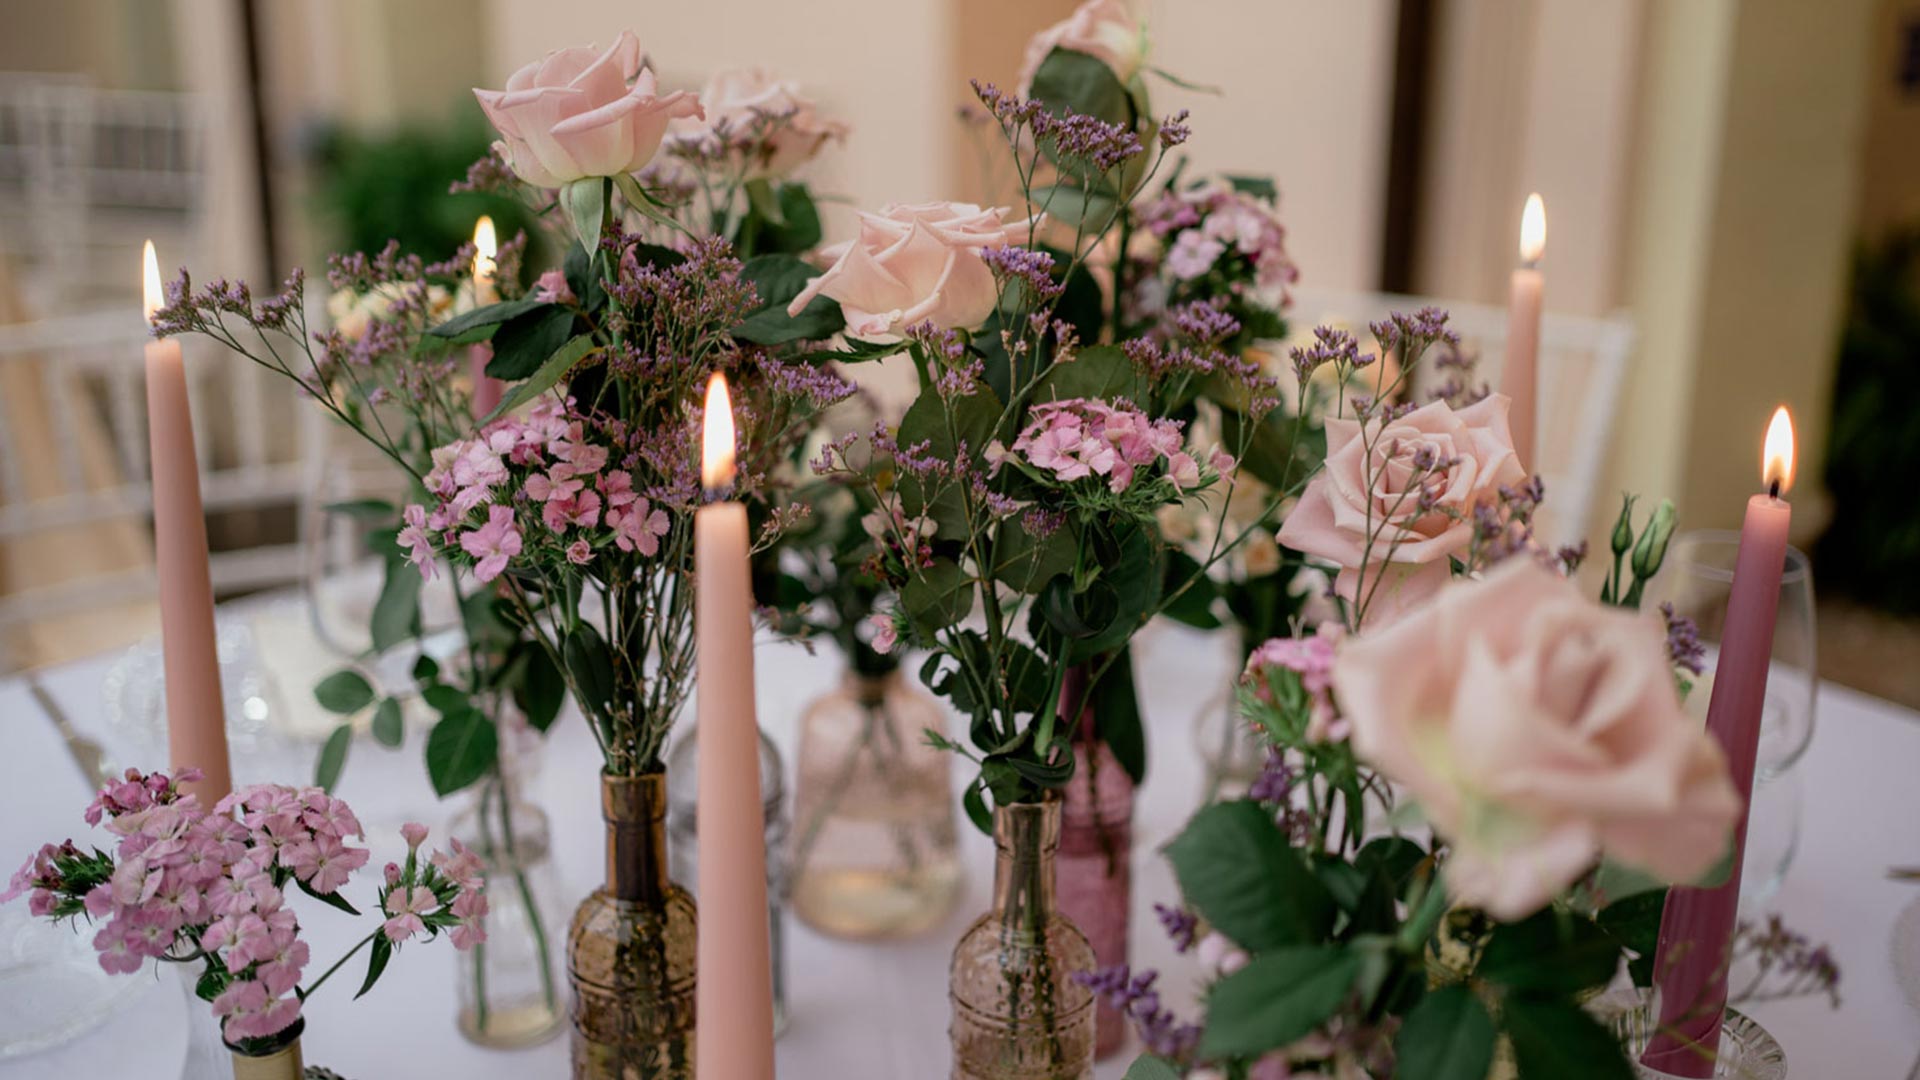 centrotavola con fiori e candele rosa tipici di ristoranti eleganti e romantici per matrimoni Caserta